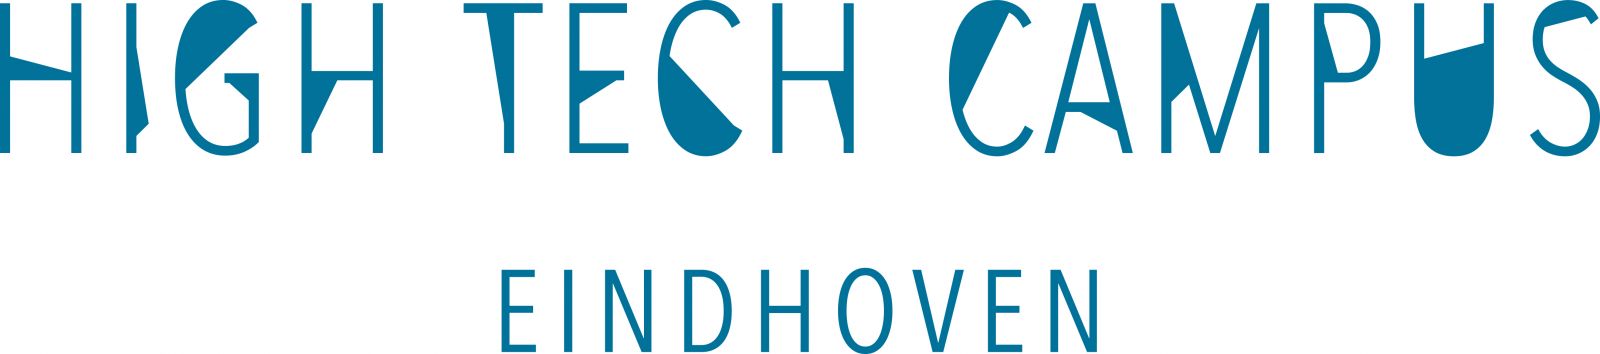 Logo-High-Tech-Campus-(2-regels)-jpg(1)